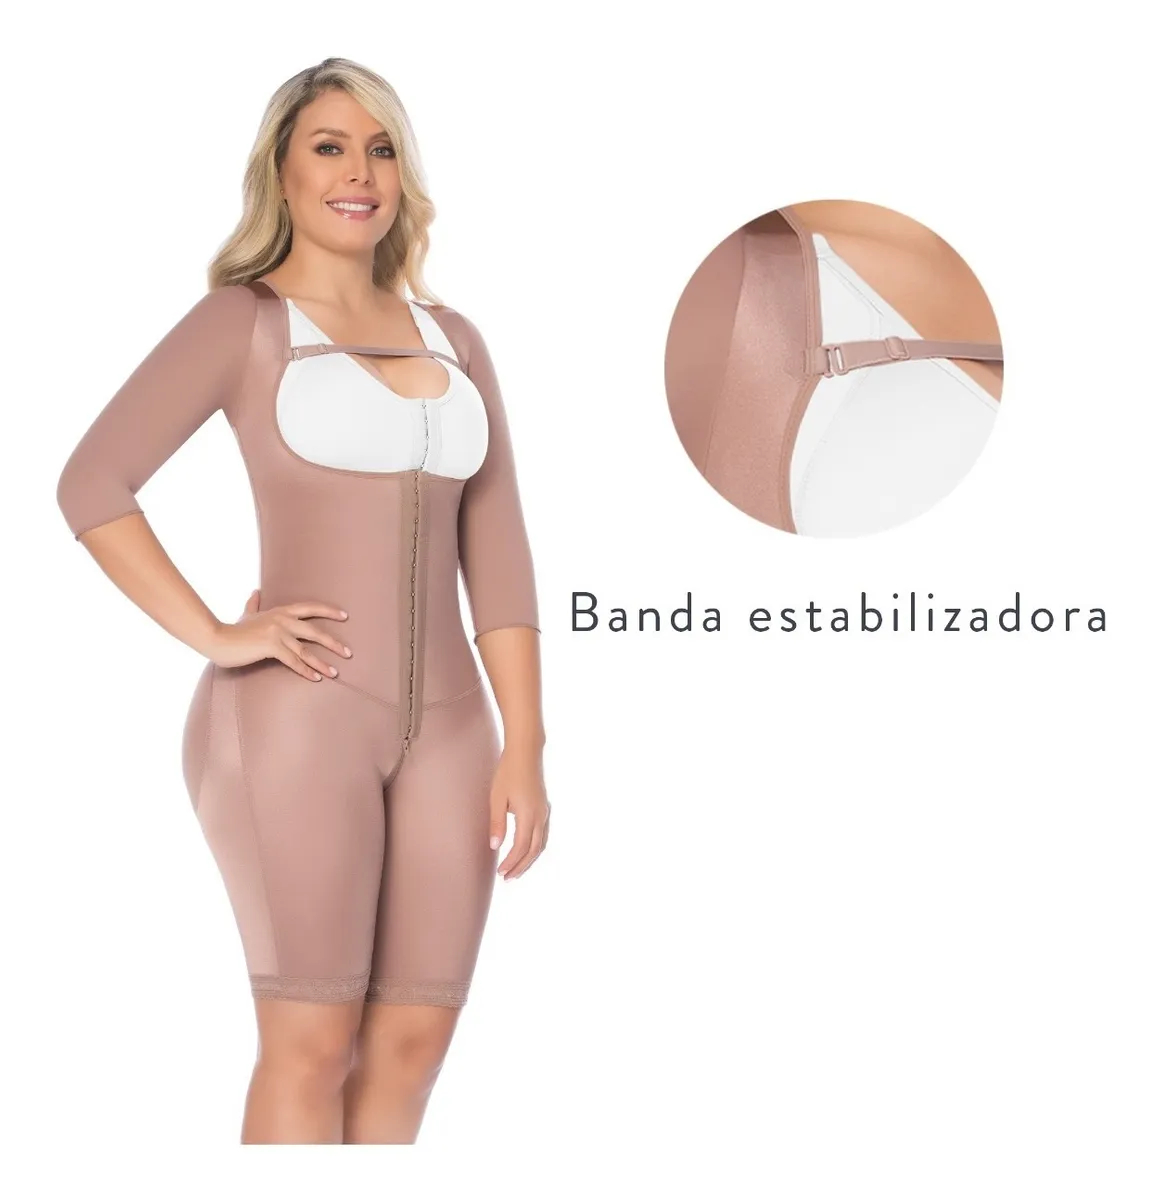 La faja colombiana de primera postura es ideal luego de una cirugía ya que su nivel de compresión es medio. Con cubrimiento y ajuste en espalda.